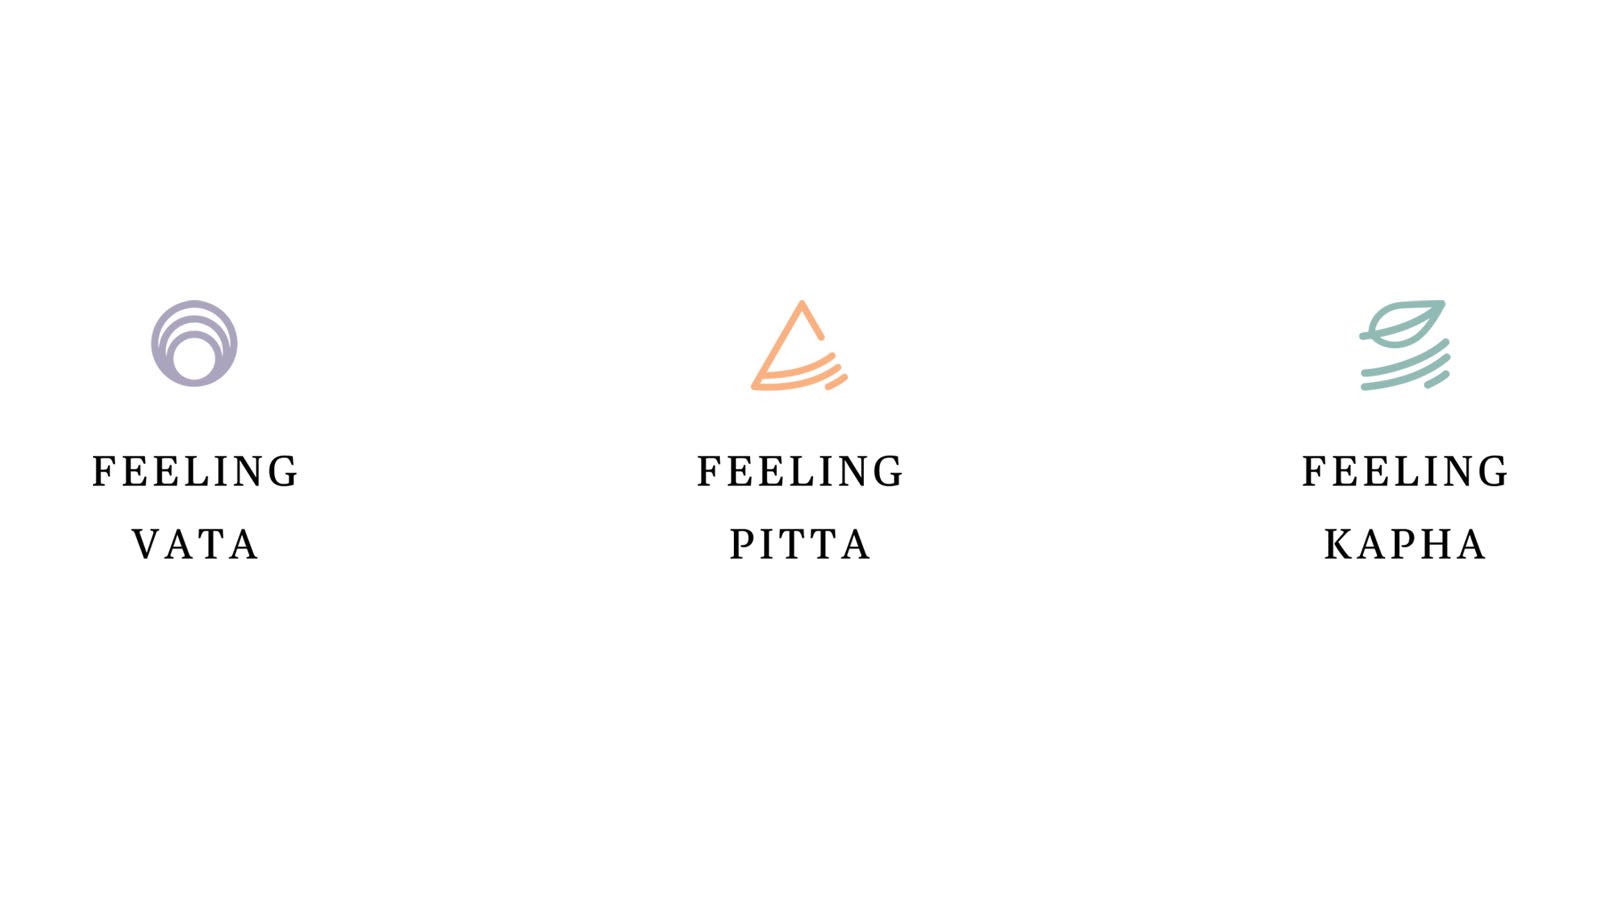 Feeling Vata - Feeling Pitta - Feeling Kapha